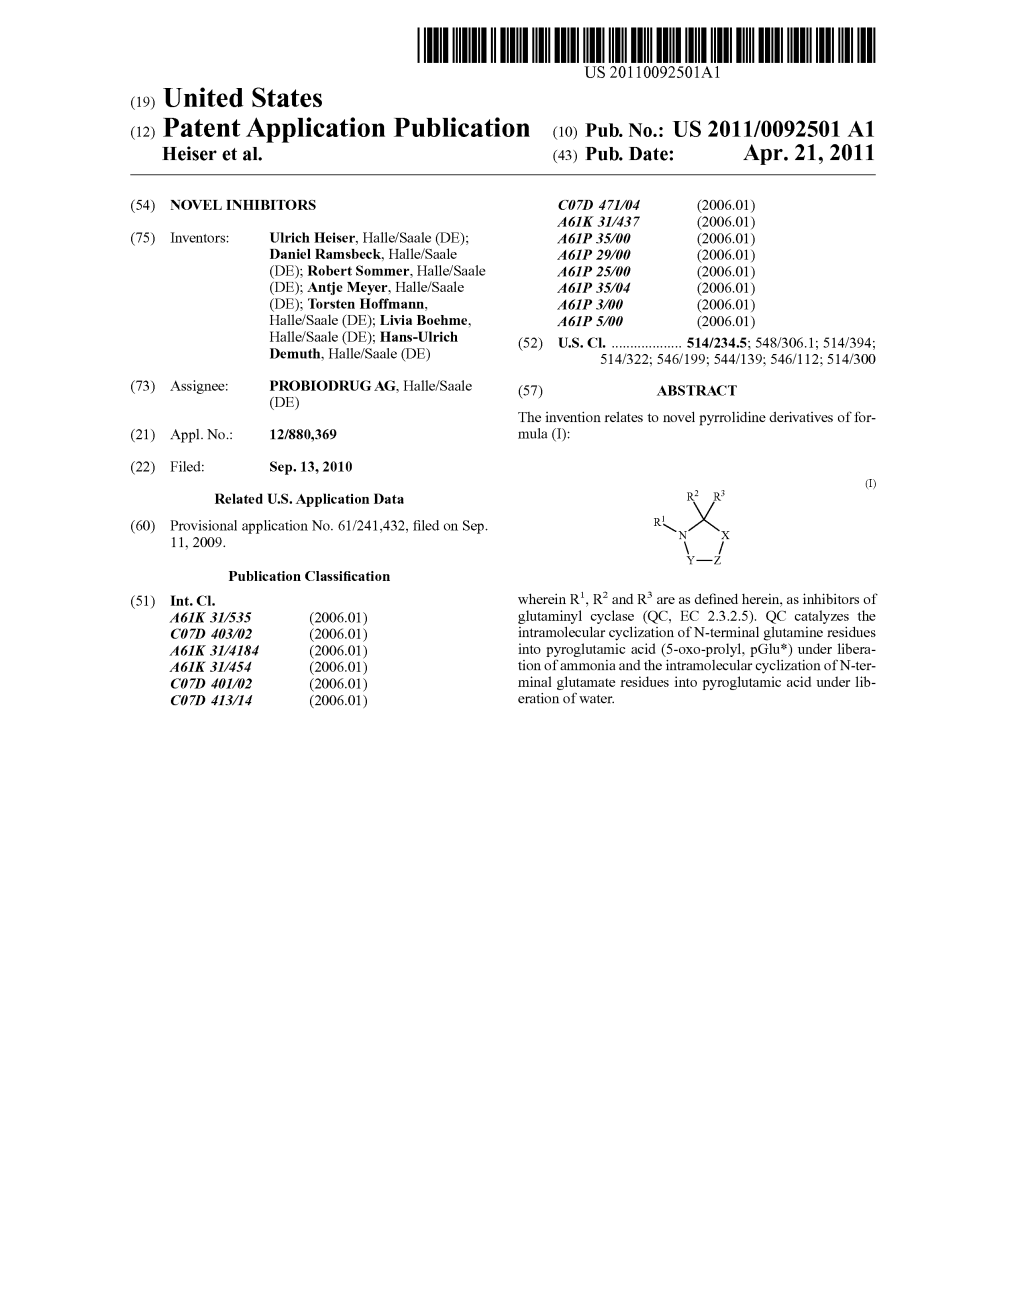 (12) Patent Application Publication (10) Pub. No.: US 2011/0092501 A1 Heiser Et Al